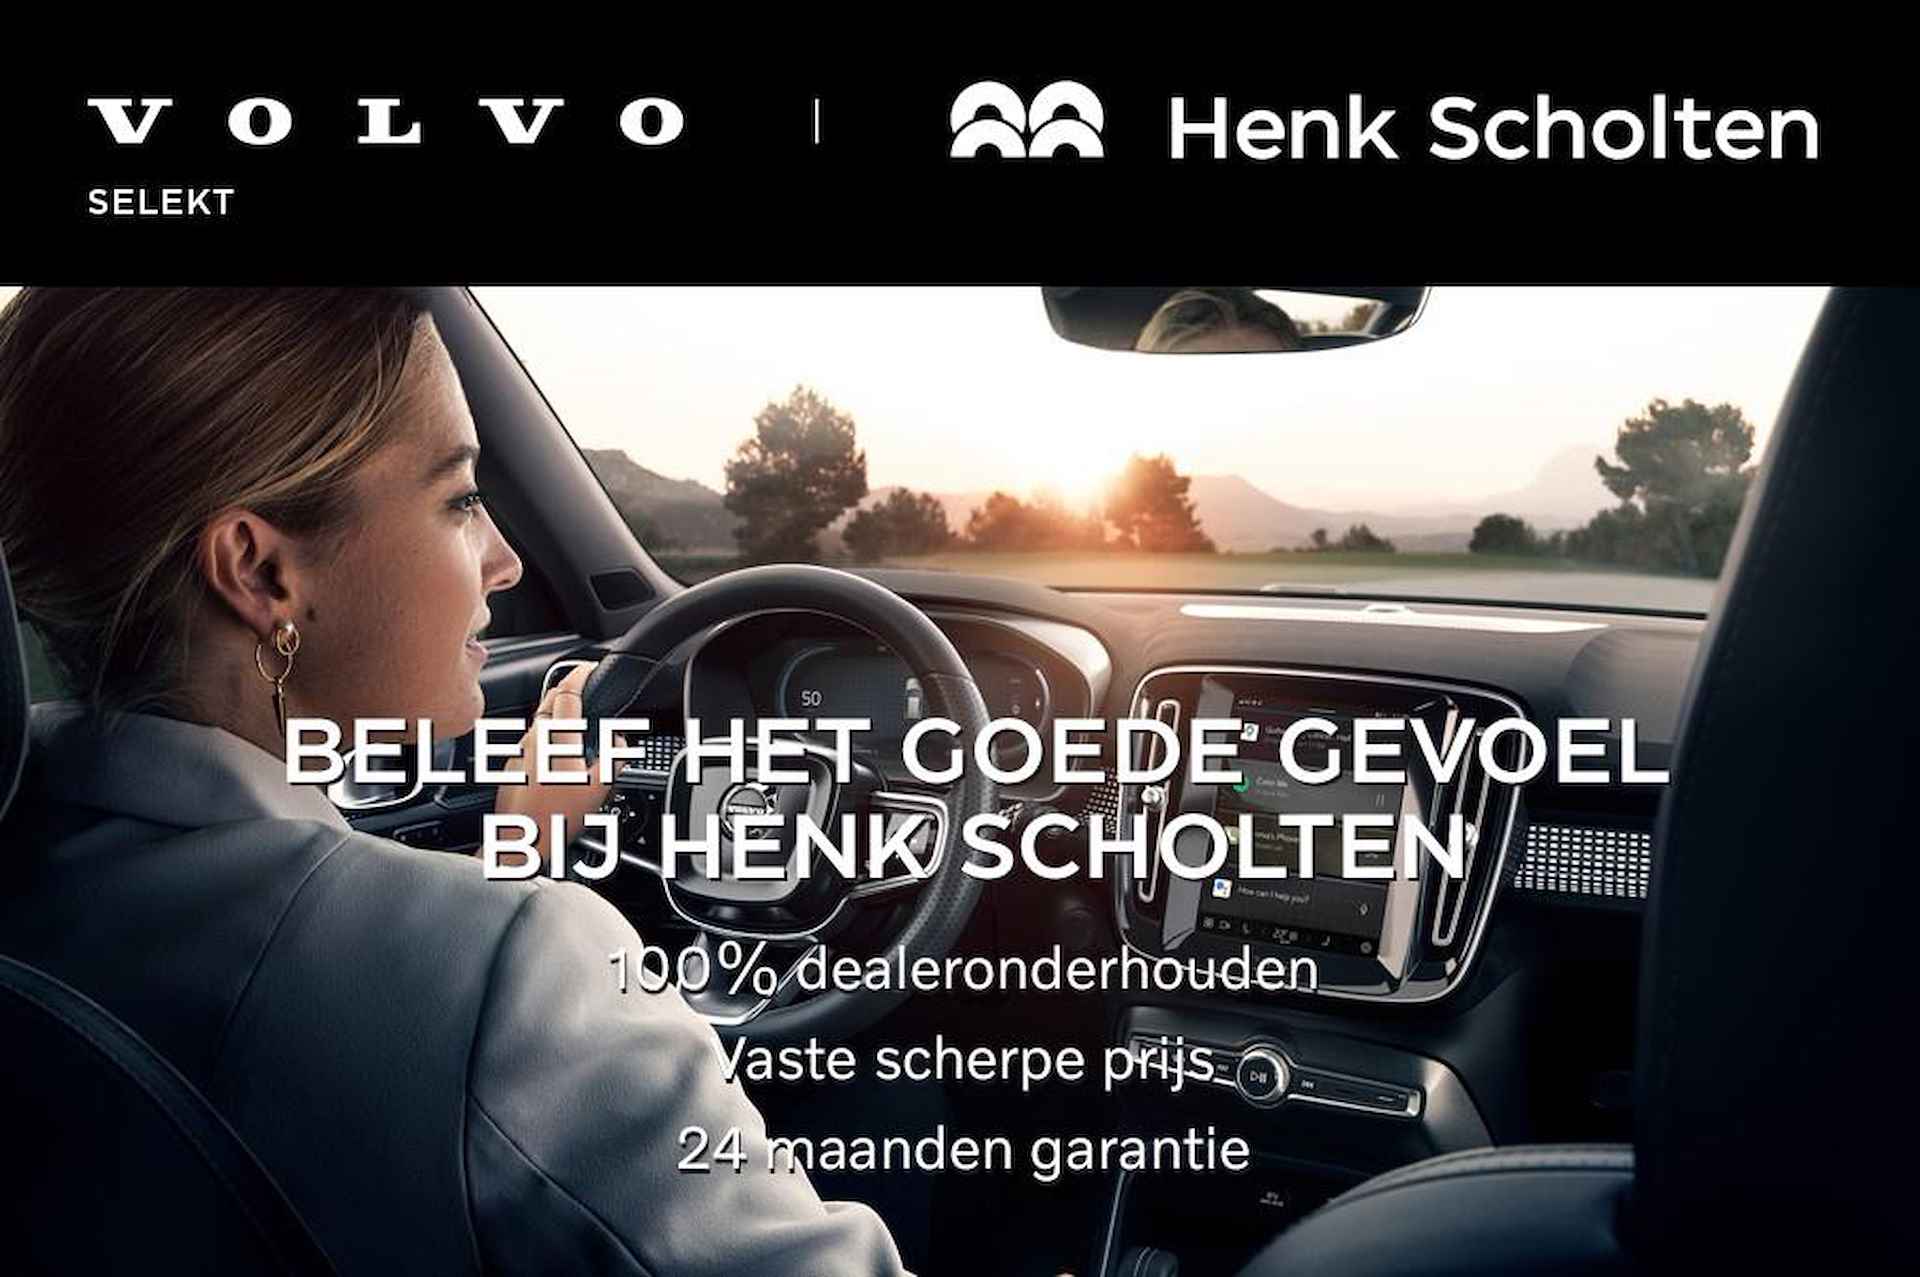 Volvo XC60 T5 245PK AUT8 FWD Ocean Race, Sensus Navigatie, Parkeersensoren V+A & Camera achter, Lederen bekleding, Verwarmbare Voorstoelen, Trekhaak, BLIS, Zeer compleet! - 10/26